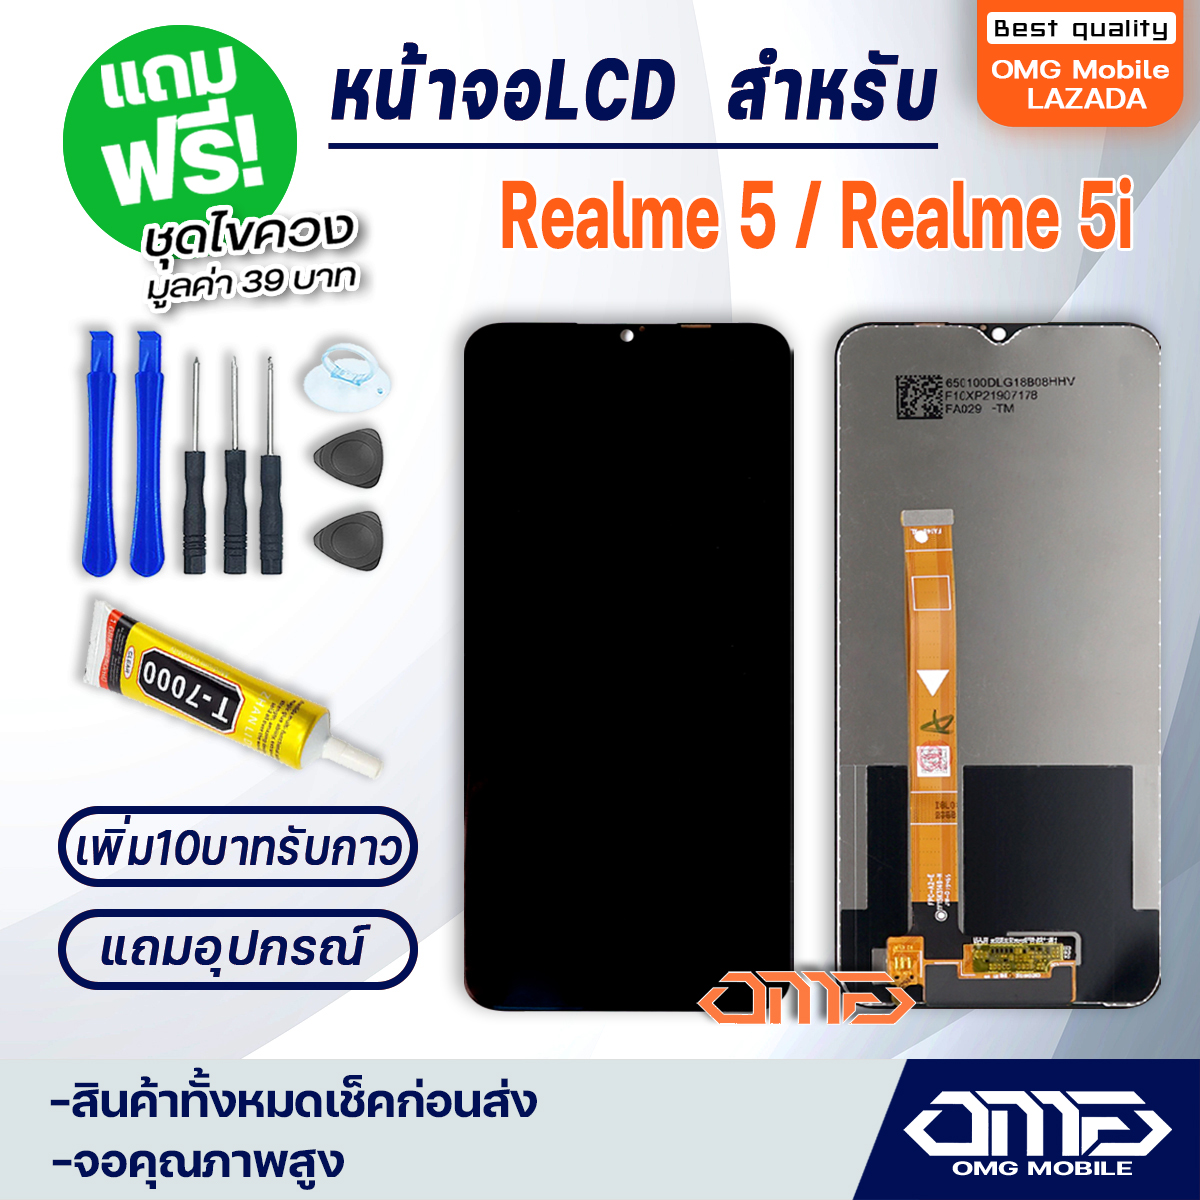 หน้าจอ LCD oppo Realme 5 / Realme 5i LCD Display พร้อมทัชสกรีน จอ+ทัช สำหรับ ออปโป้ oppo Realme 5 / Realme 5i แถมไขควง สามารถเลือกซื้อพร้อมกาว T7000